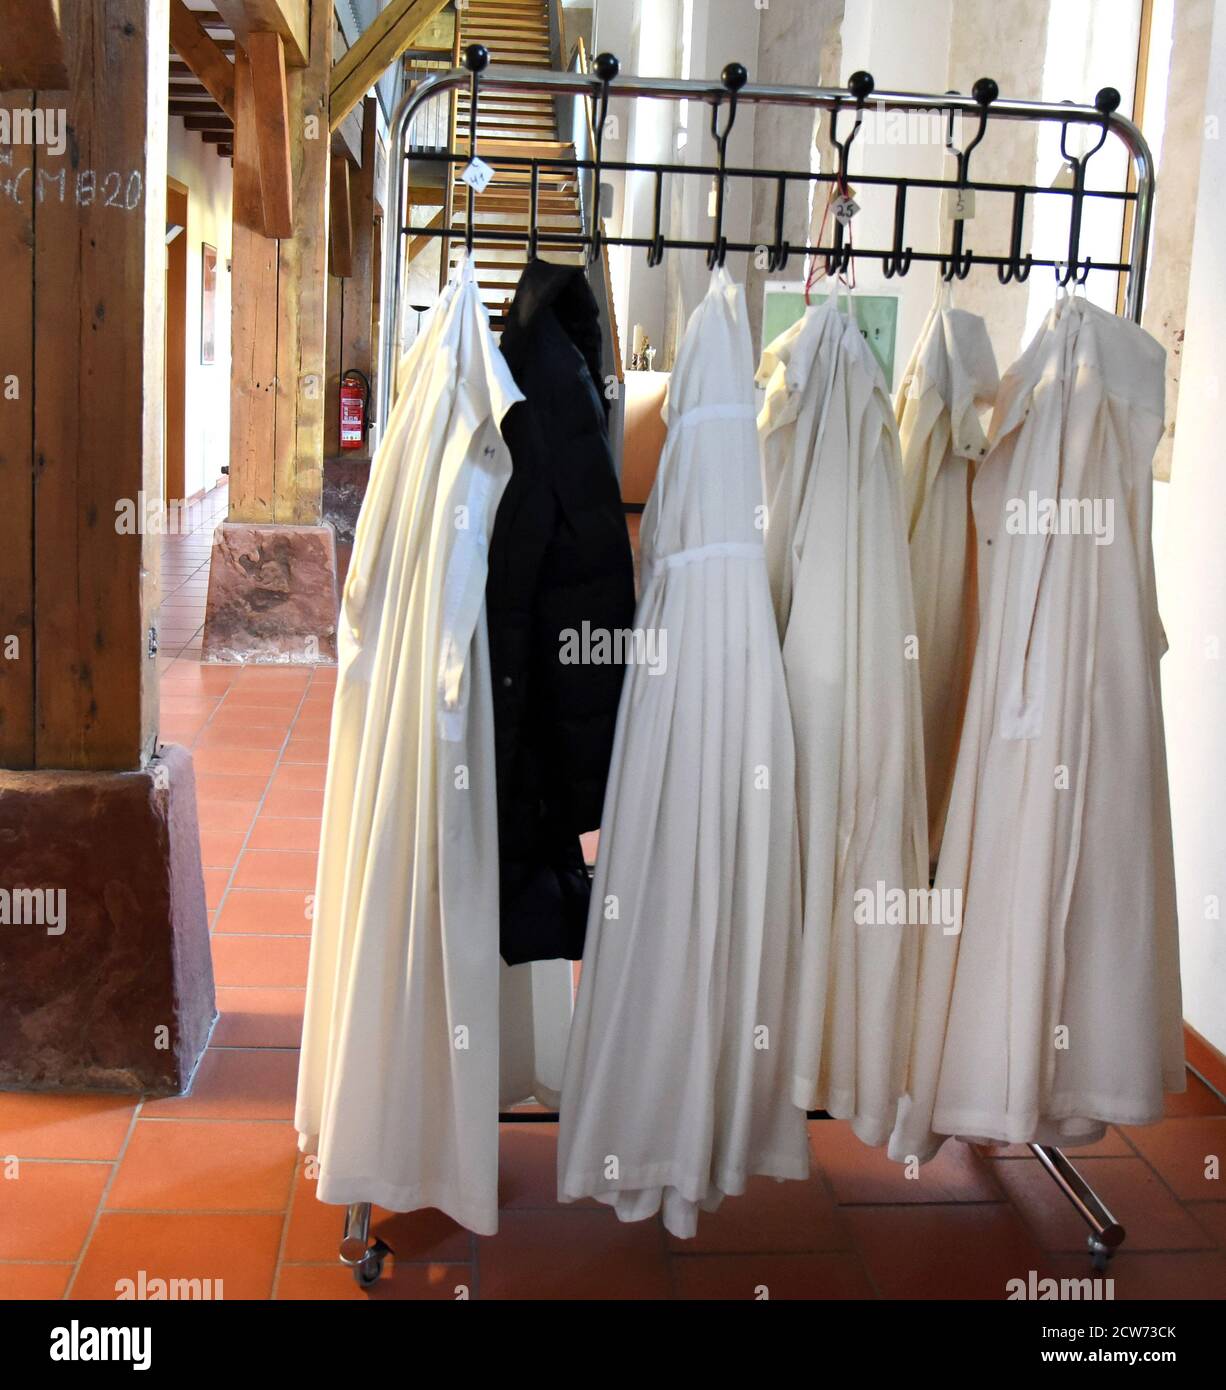 22 septembre 2020, Saxe-Anhalt, Helfta, OT Von Lutherstadt Eisleben: Dans  le couvent cistercien de Saint-Marien à Helfta (OT de Lutherstadt Eisleben)  il y a un porte-vêtements avec les robes de choeur pour